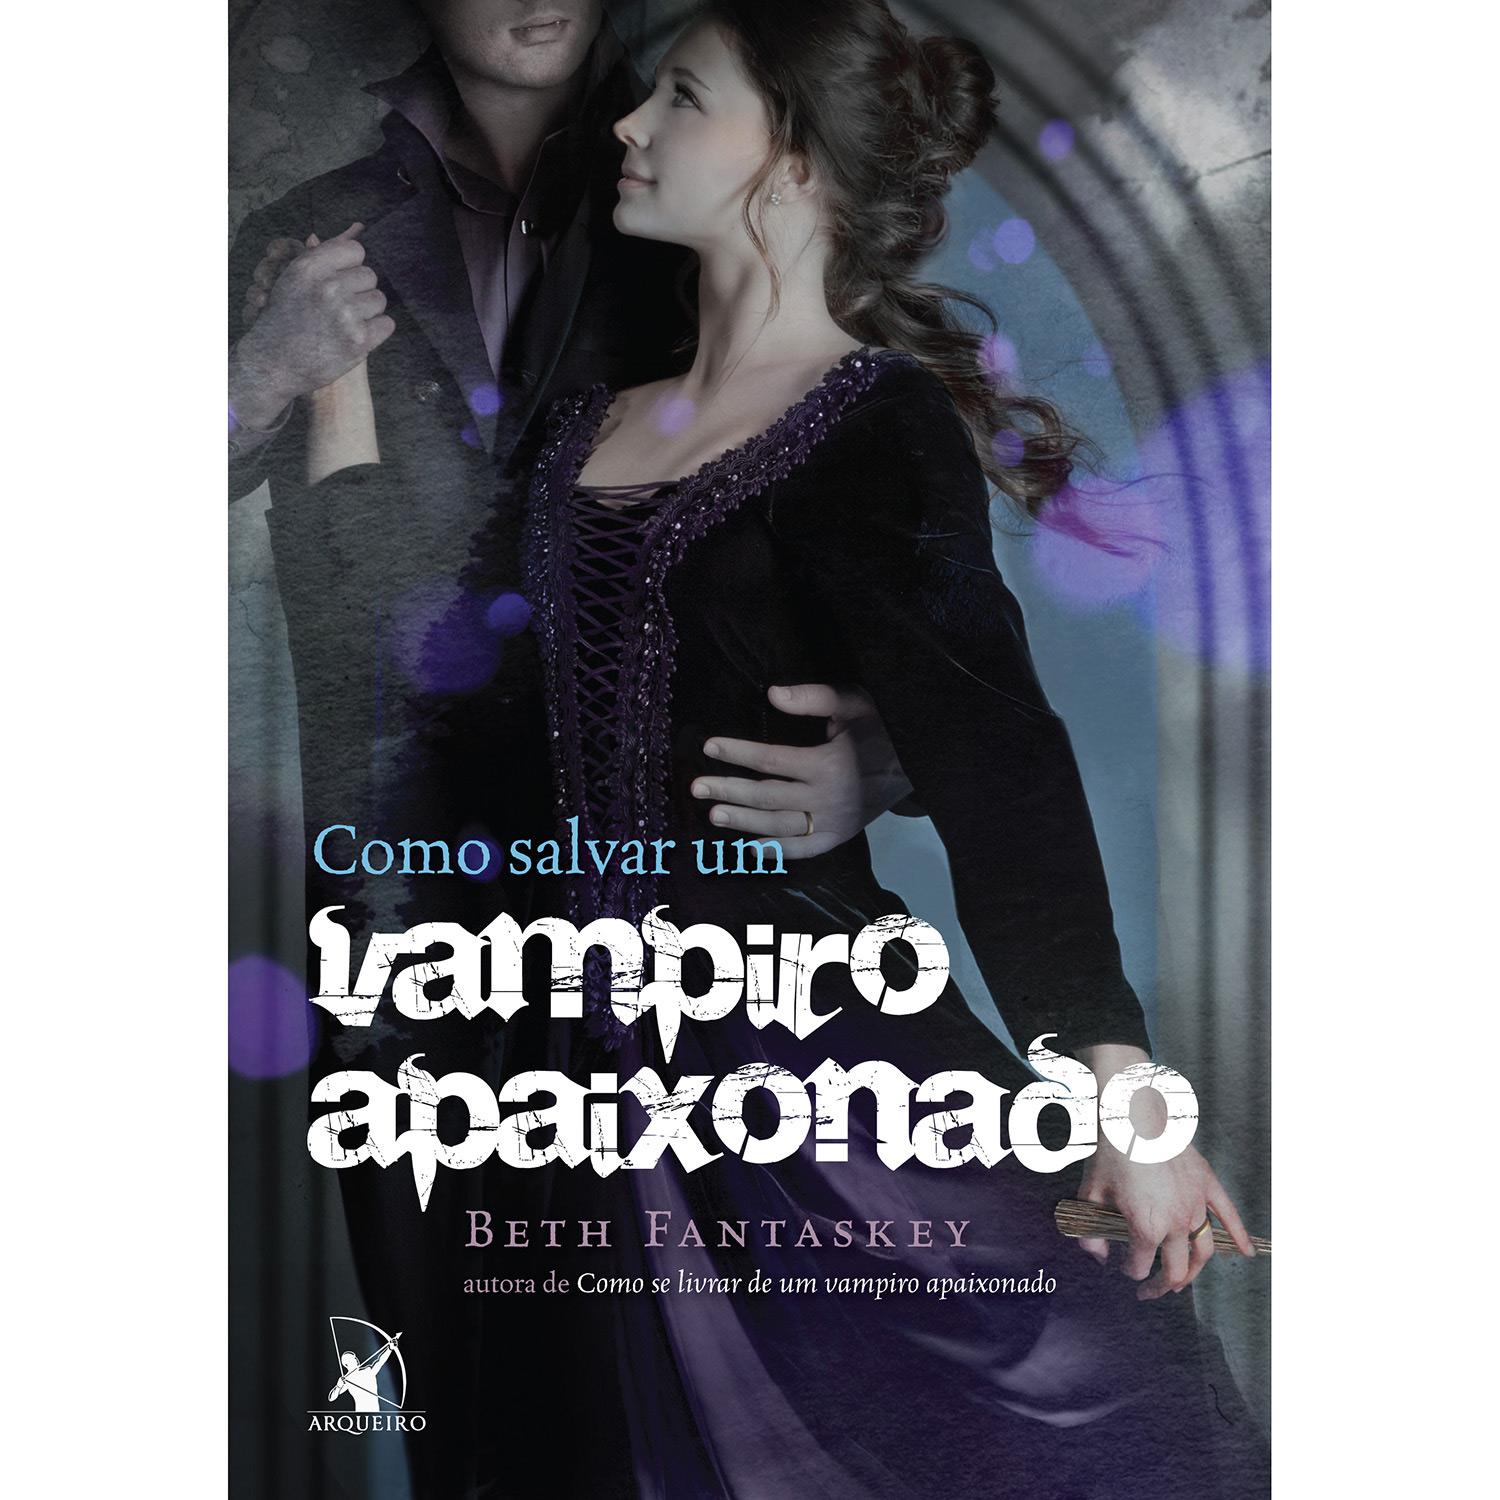 Livro - Como Salvar um Vampiro Apaixonado é bom? Vale a pena?